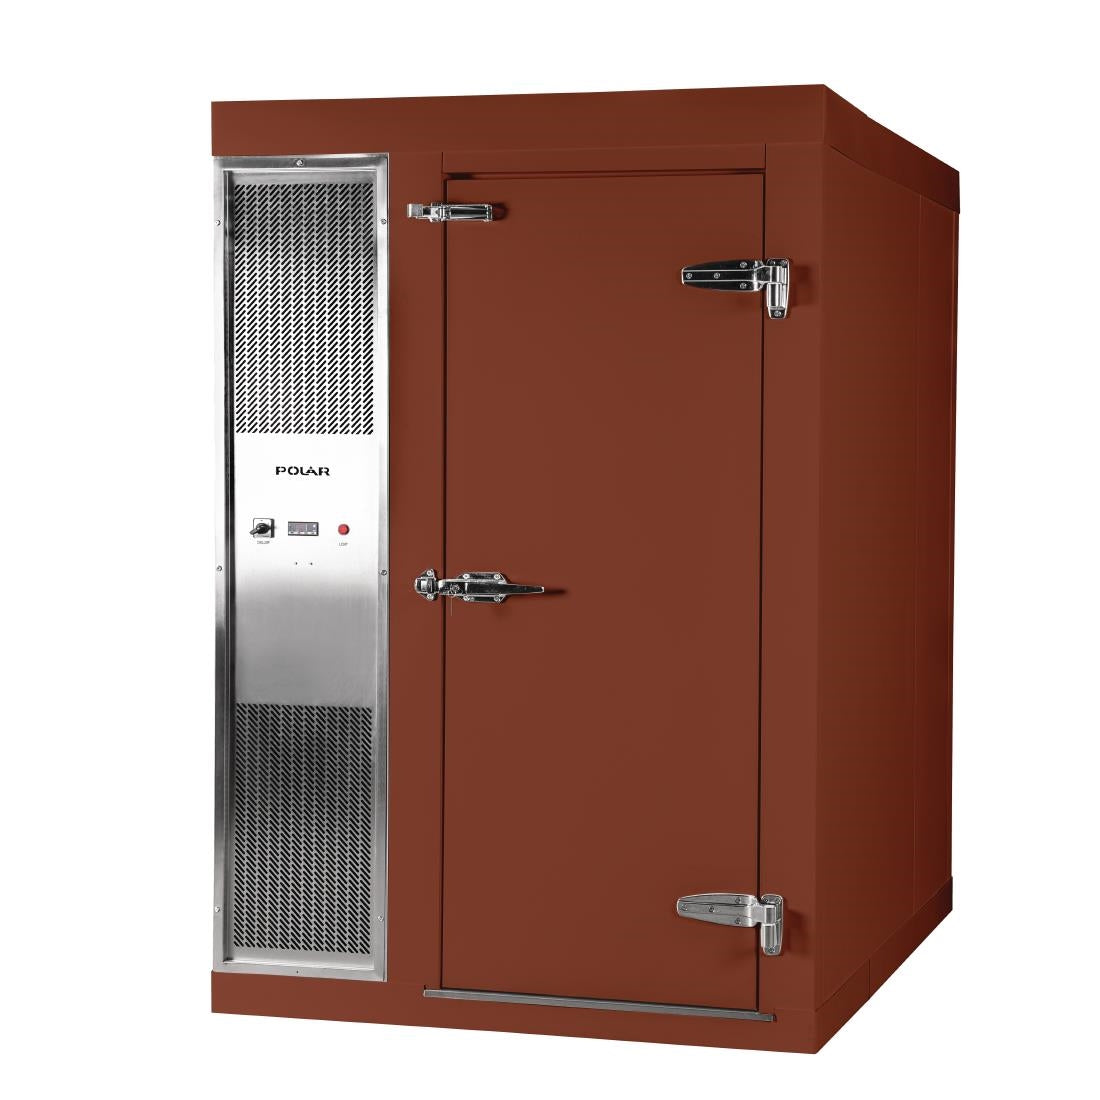 DS480-FBN Polar U-Series 1.2 x 1.5m Integral Walk In Freezer Room Brown JD Catering Equipment Solutions Ltd